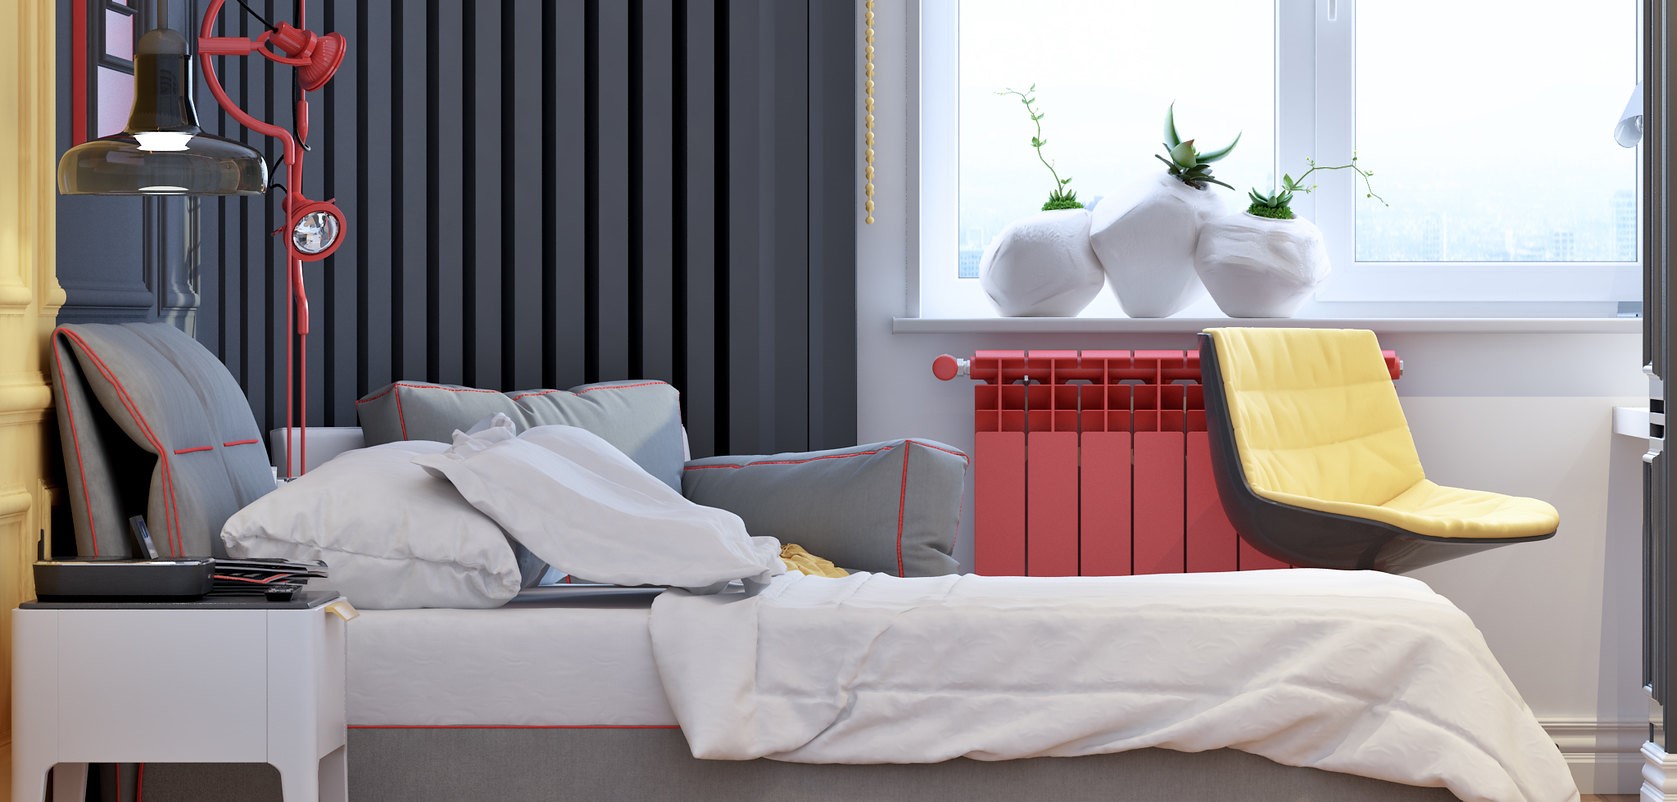 Ideen für Teenager-Schlafzimmer - ein gut durchdachtes Design